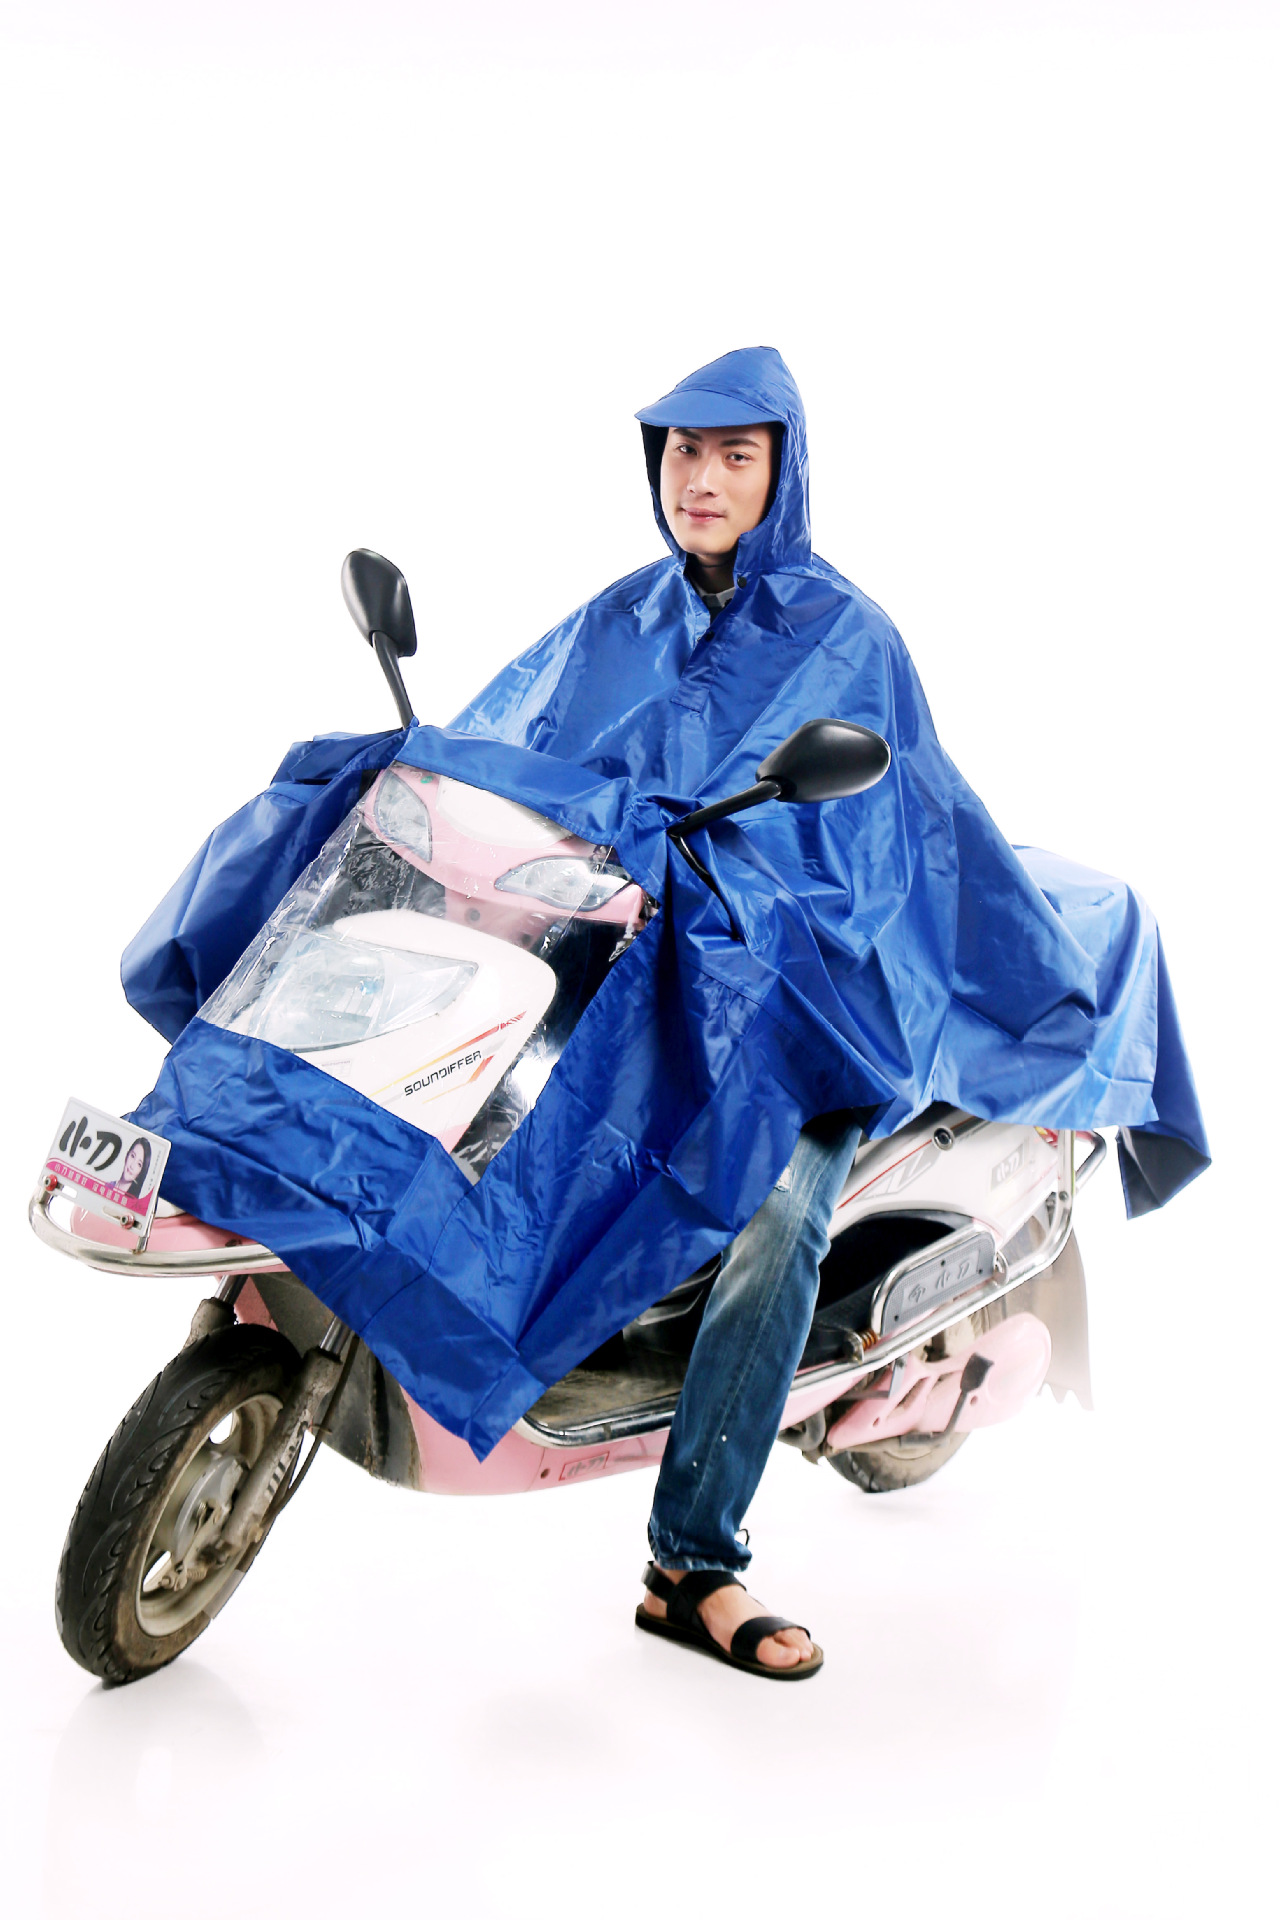 连体雨衣、雨披 专业供应特大尼龙优质胶布雨披 金华地区厂家(图)2